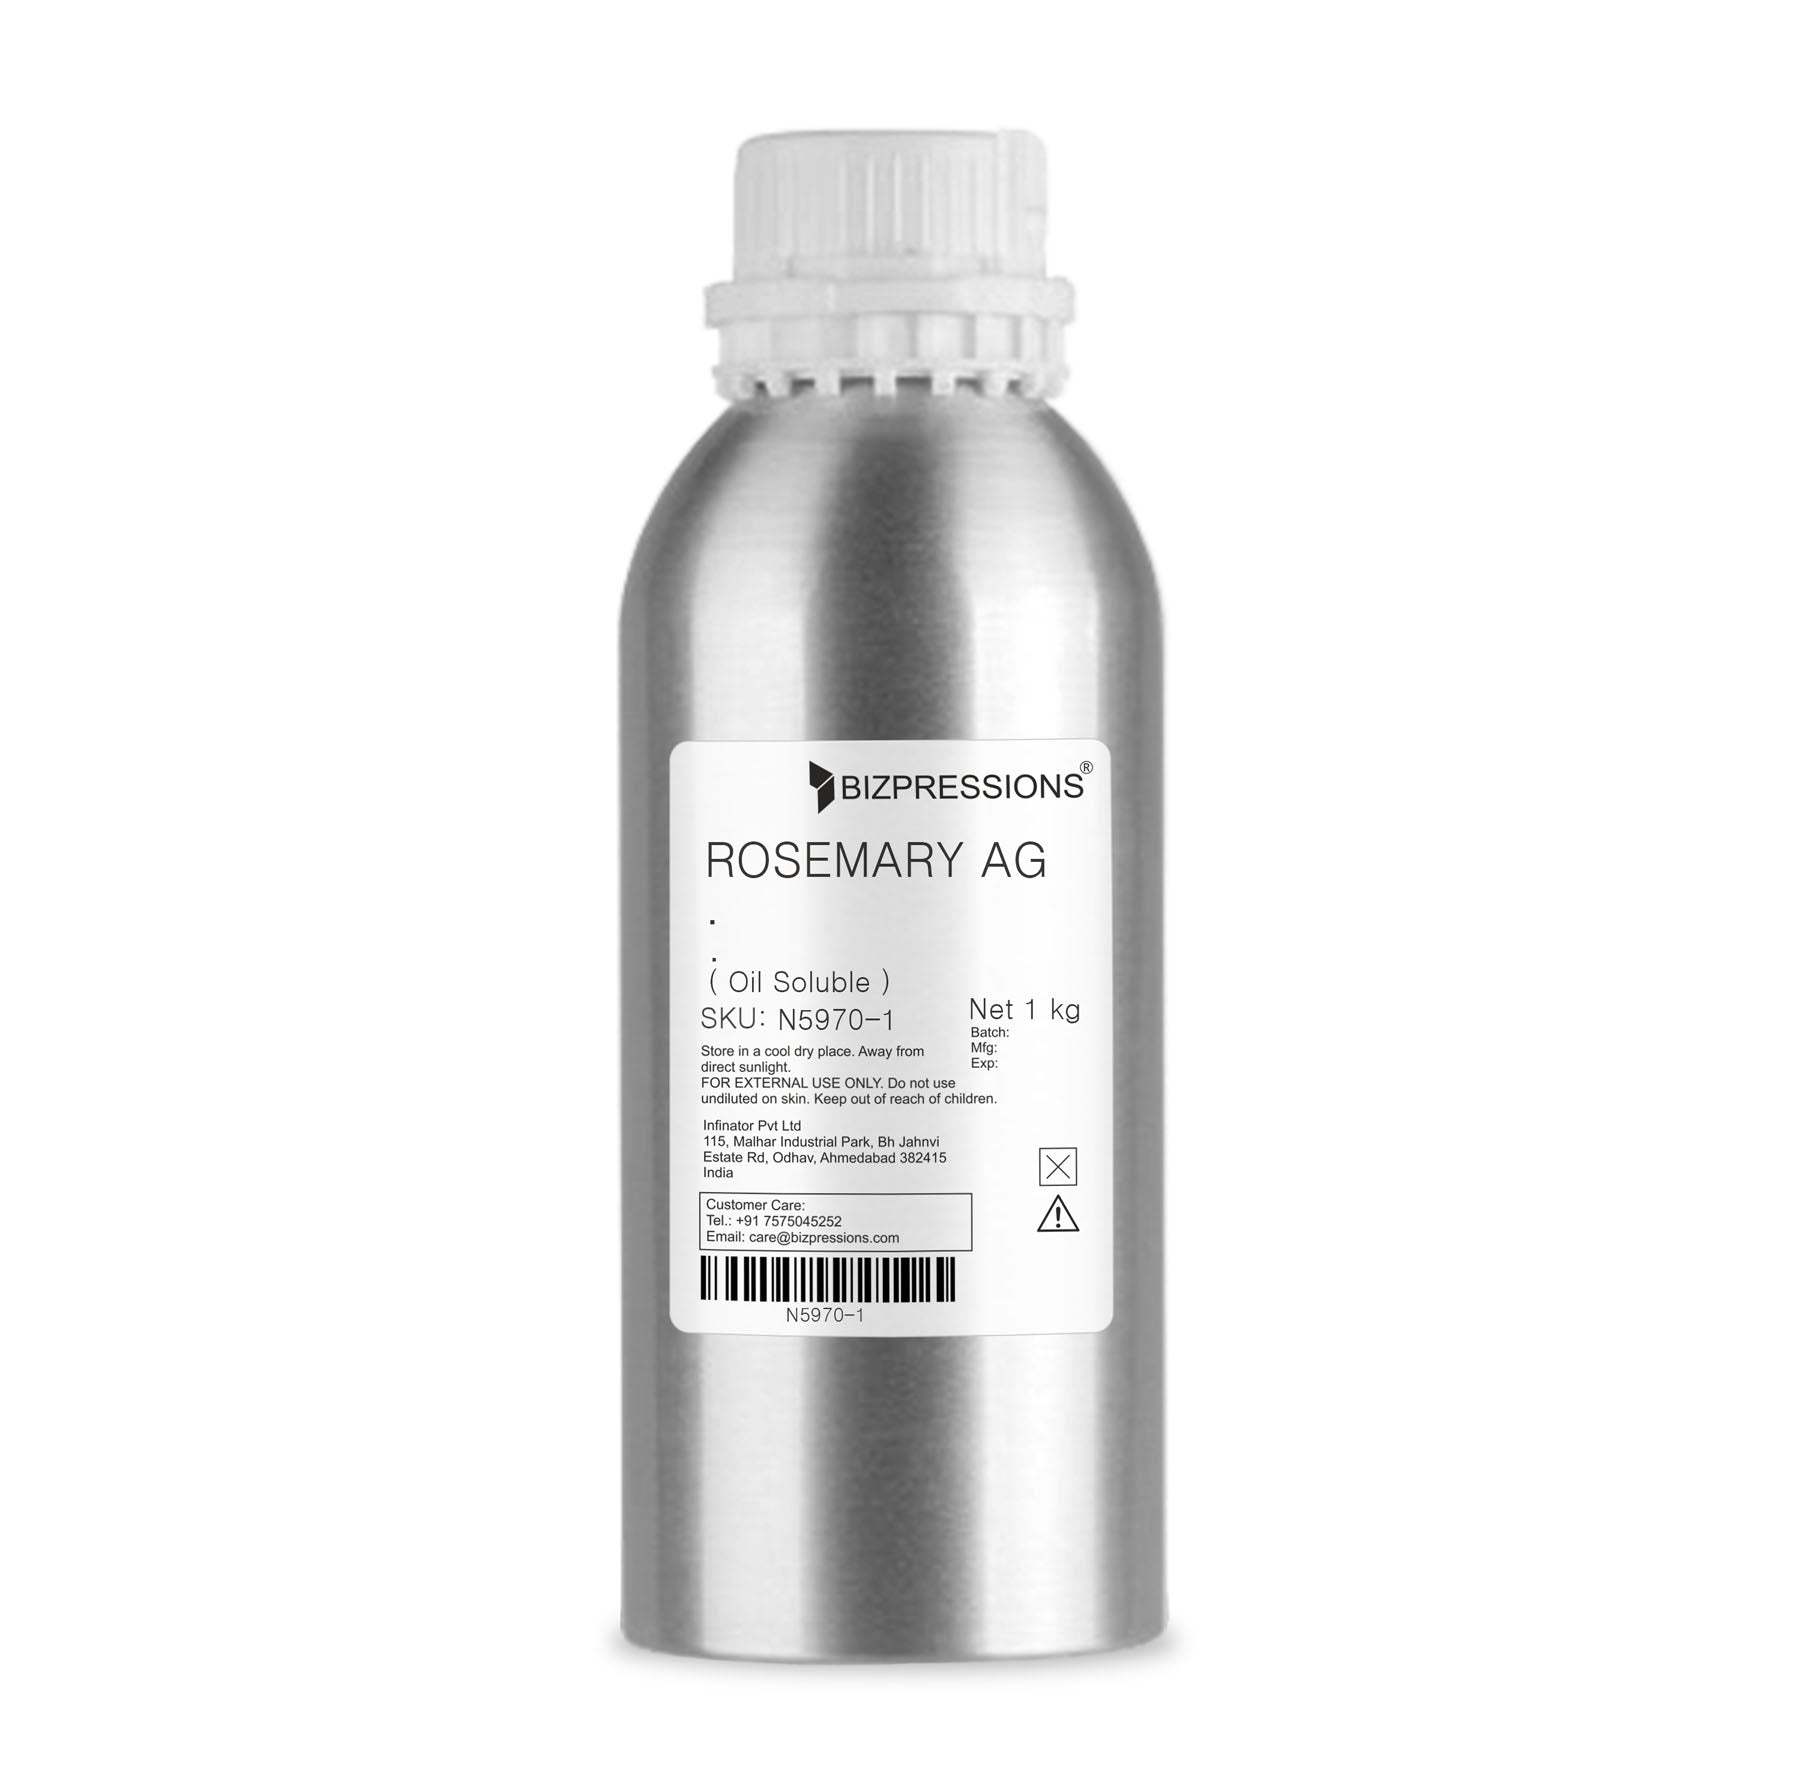 ROSEMARY AG - Fragrance ( Oil Soluble ) - 1 kg